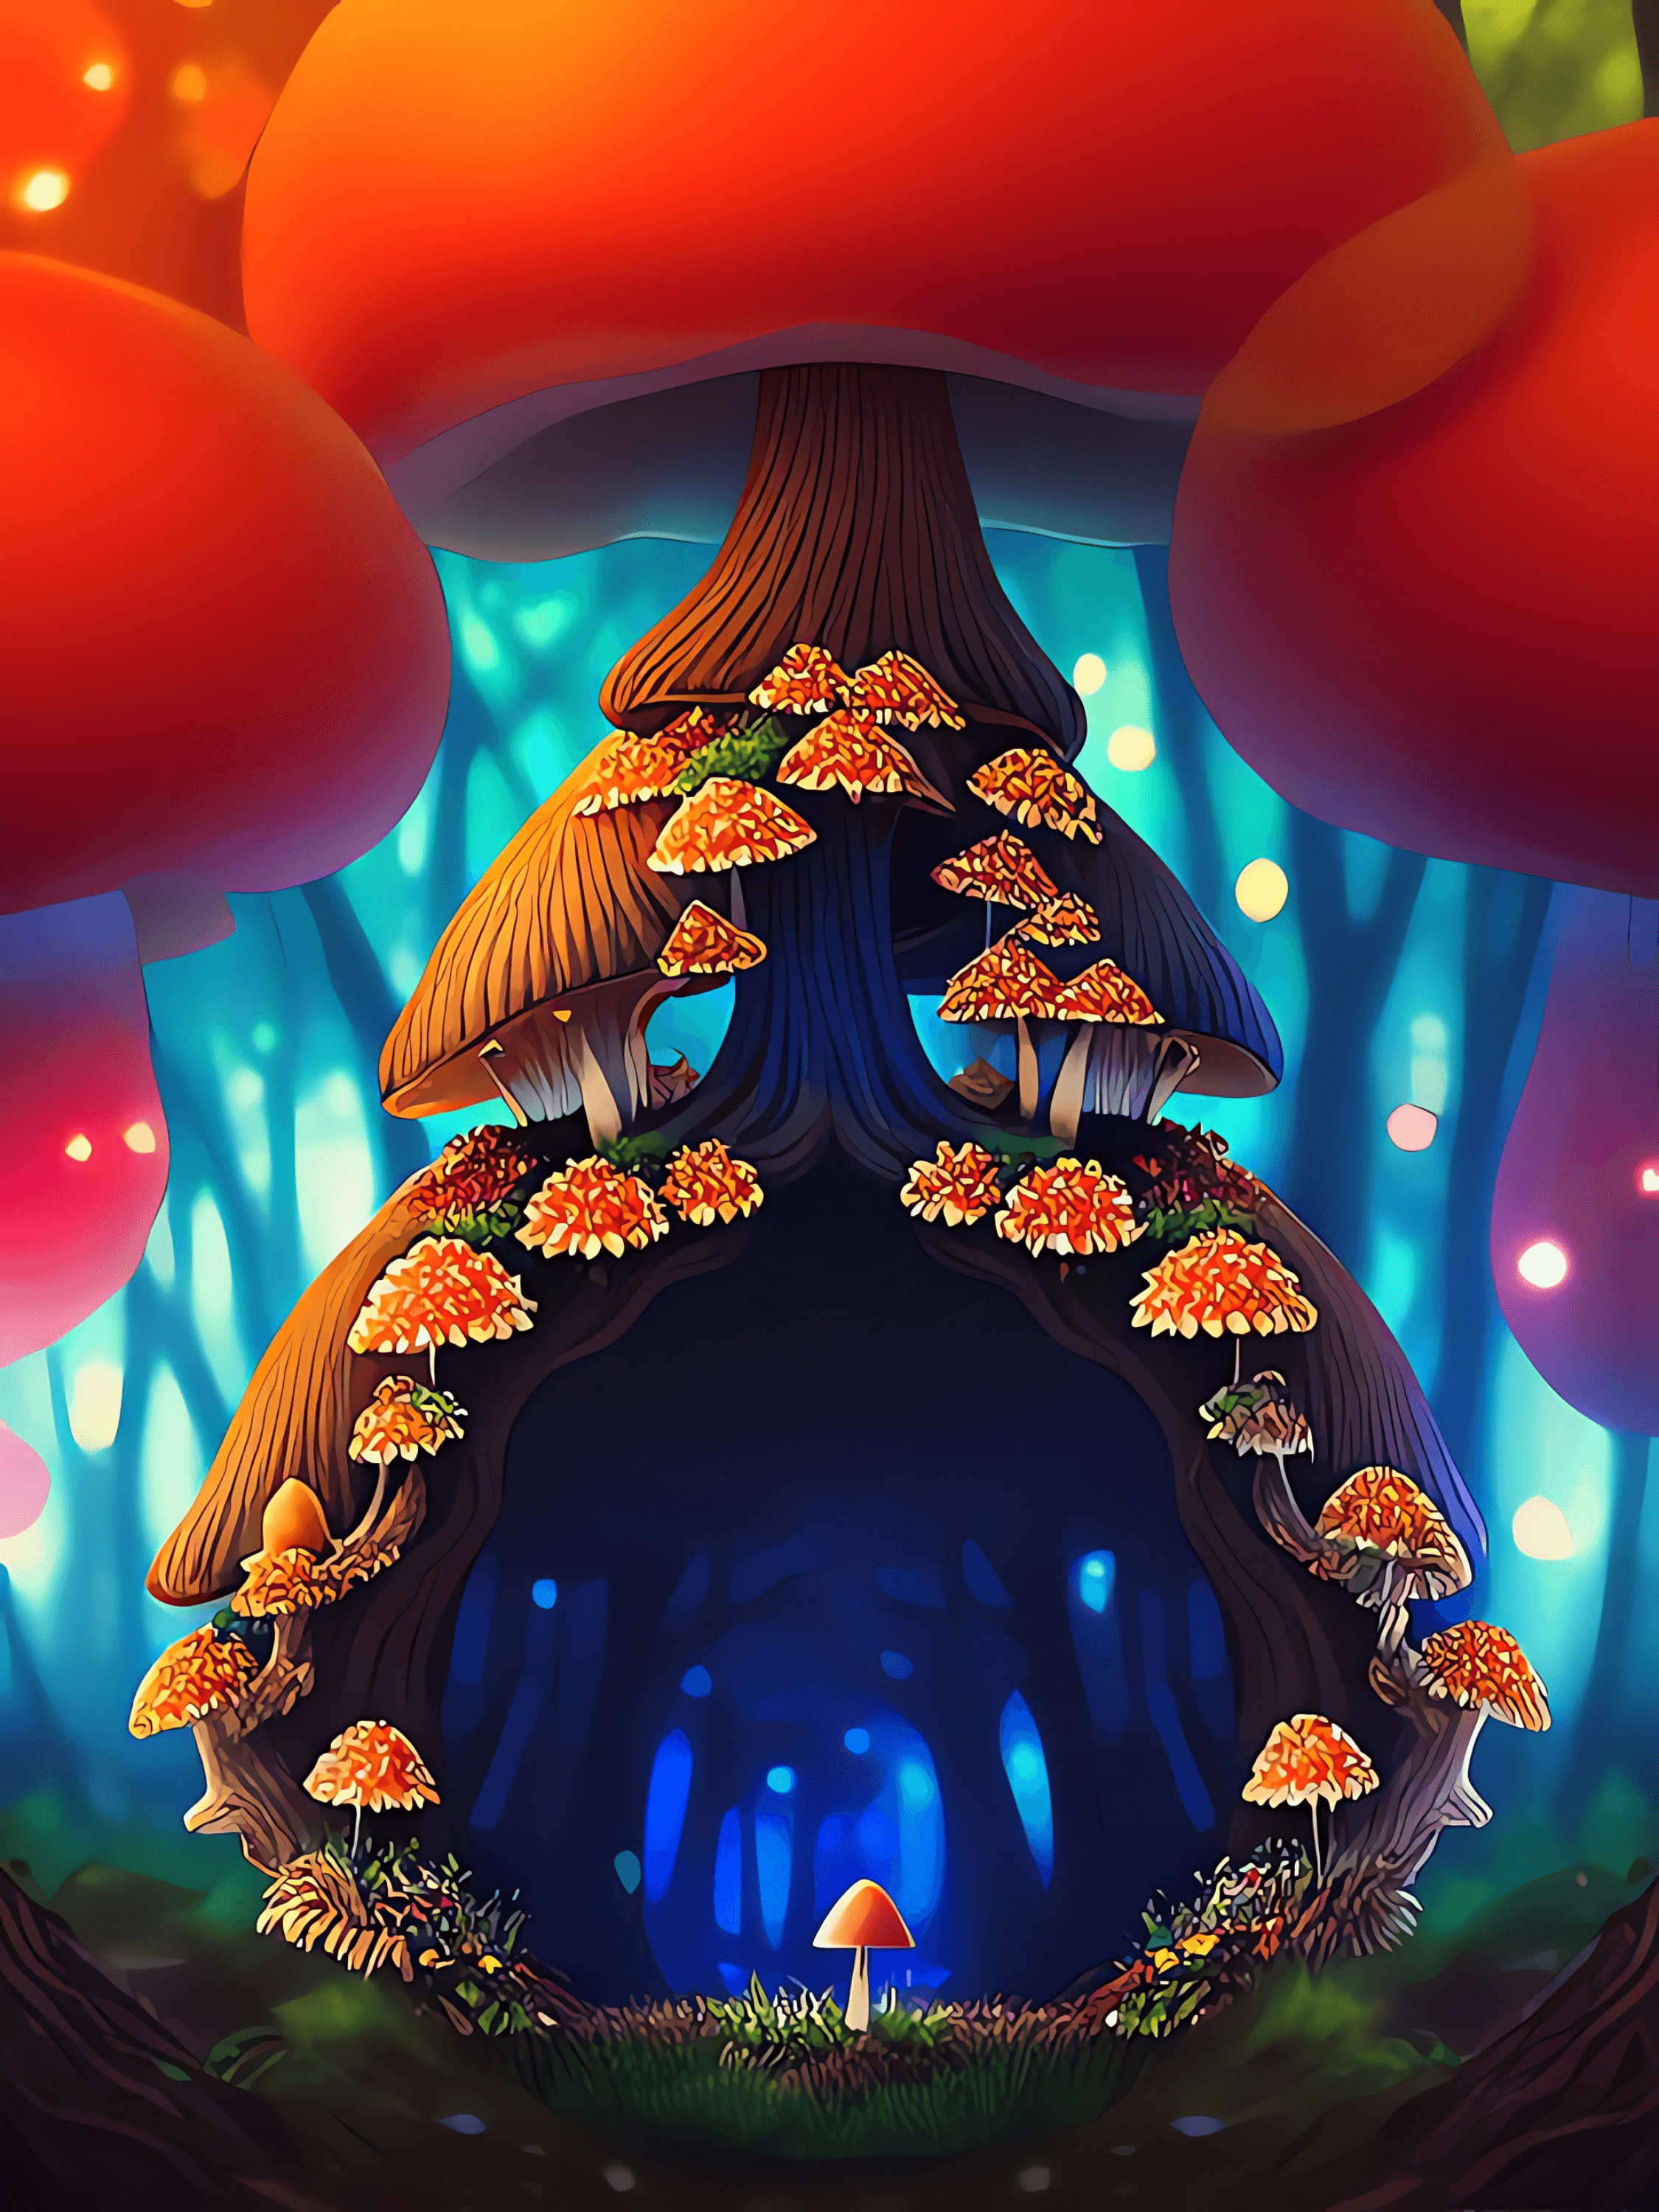 Mandelbrot Mushroom Kingdom